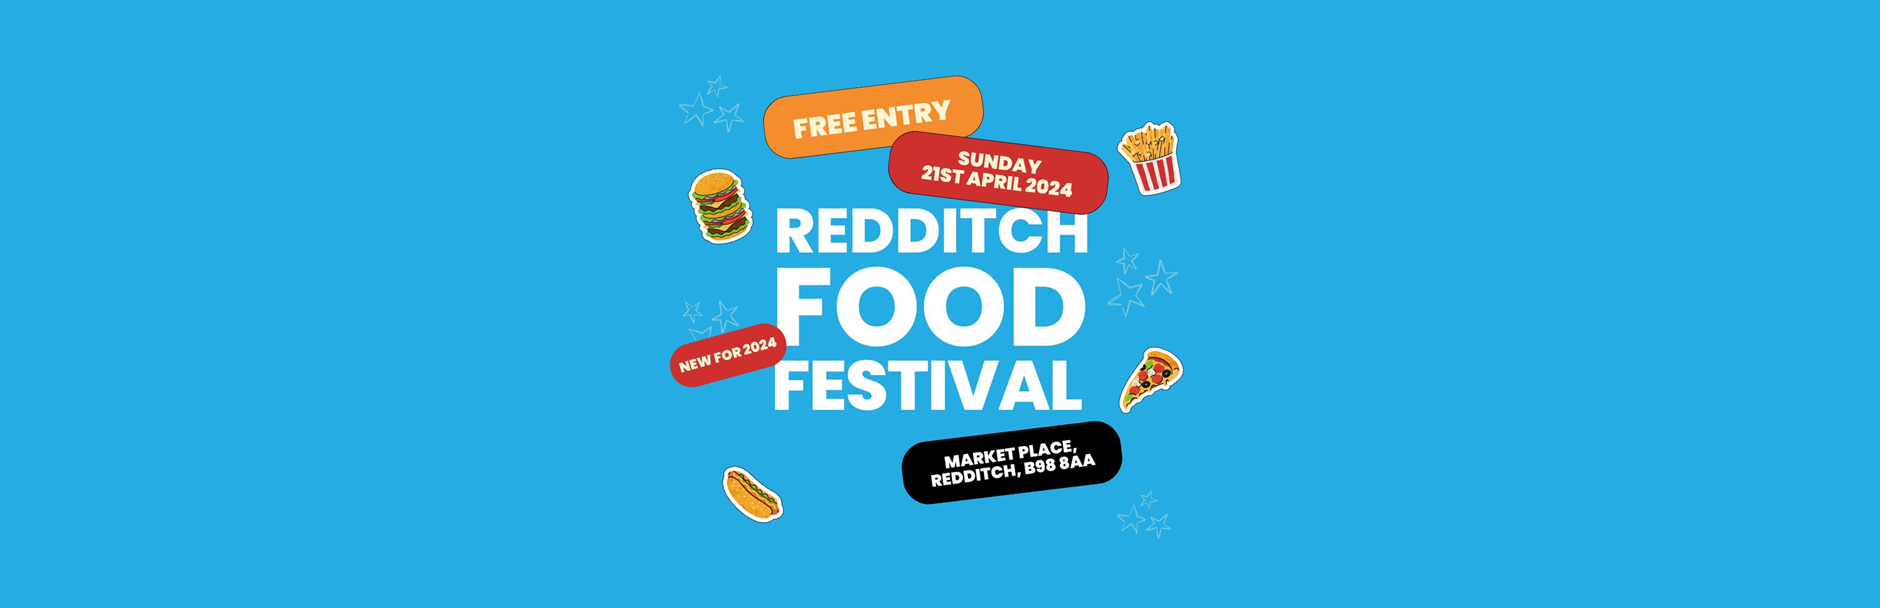 Redditch Food Festival